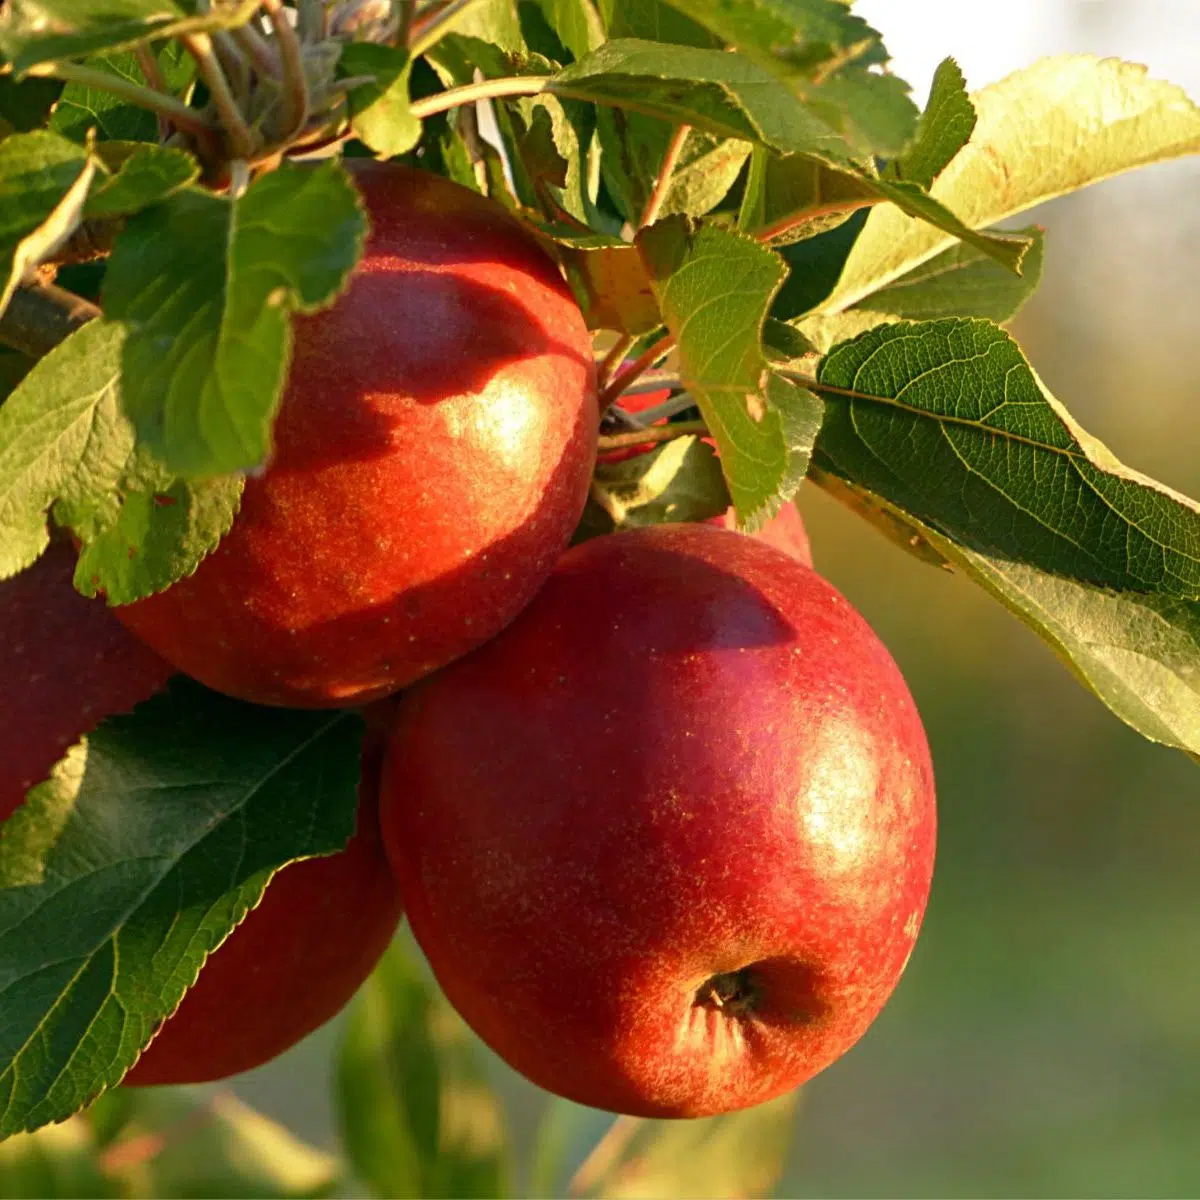 أفضل التفاح لخبز فطيرة التفاح مع التفاح الطازج على الشجرة في ضوء الشمس.